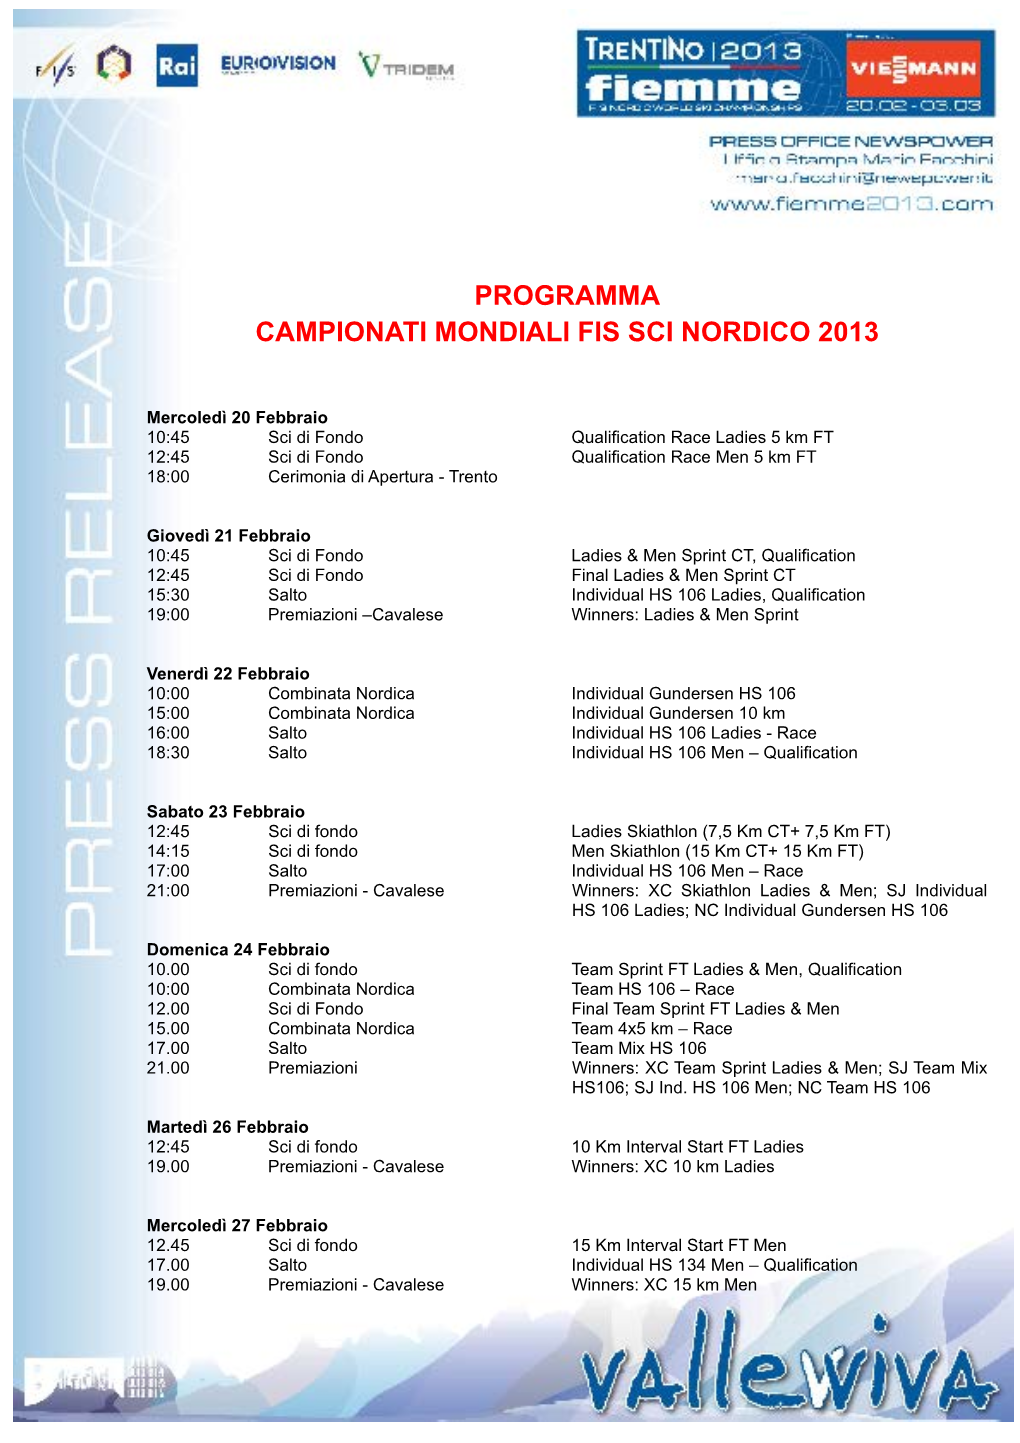 Programma Campionati Mondiali Fis Sci Nordico 2013